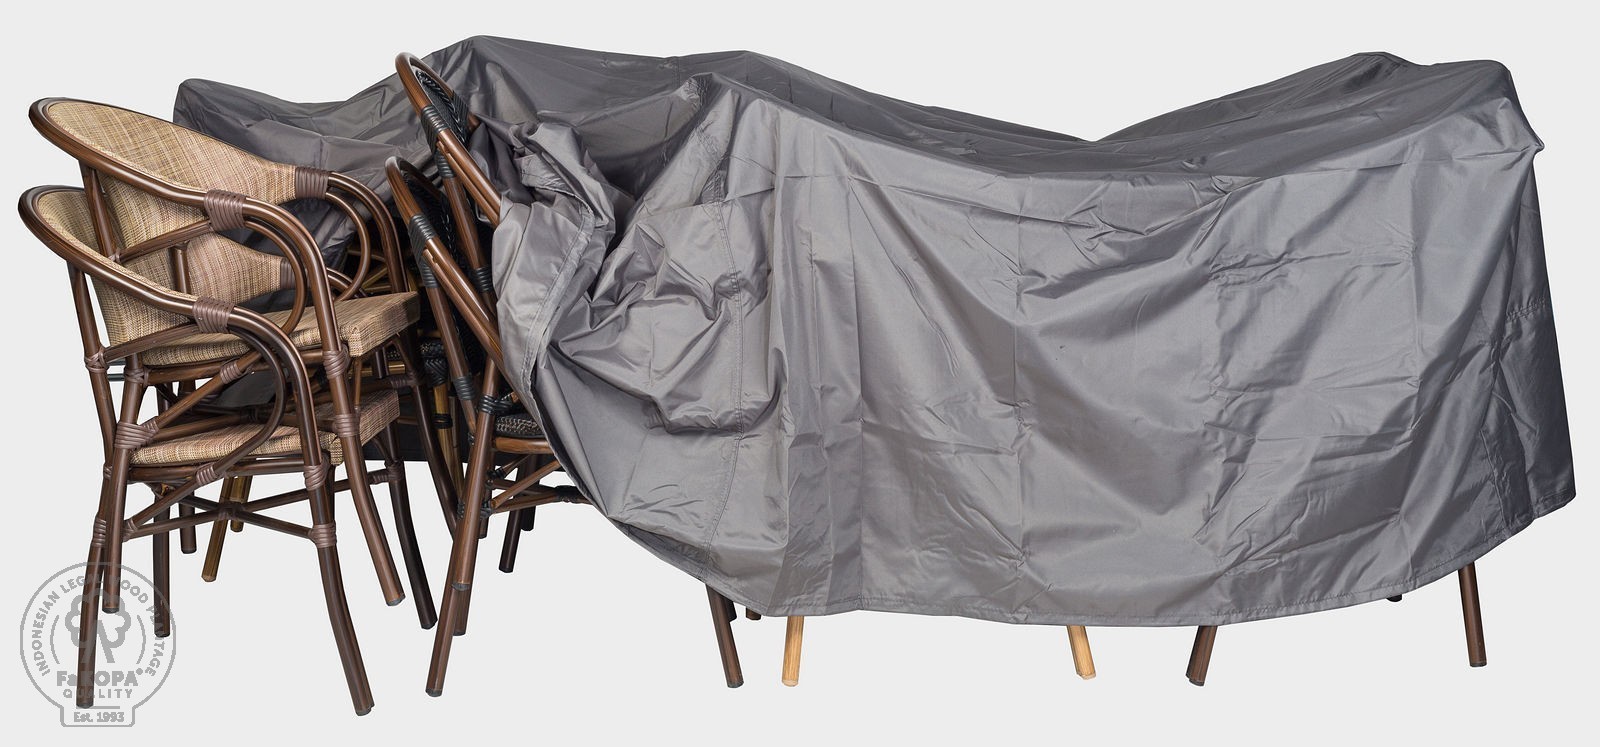 FaKOPA s. r. o. Krycí plachta na záhradní nábytek - 250x300x75 cm, 100% polyester